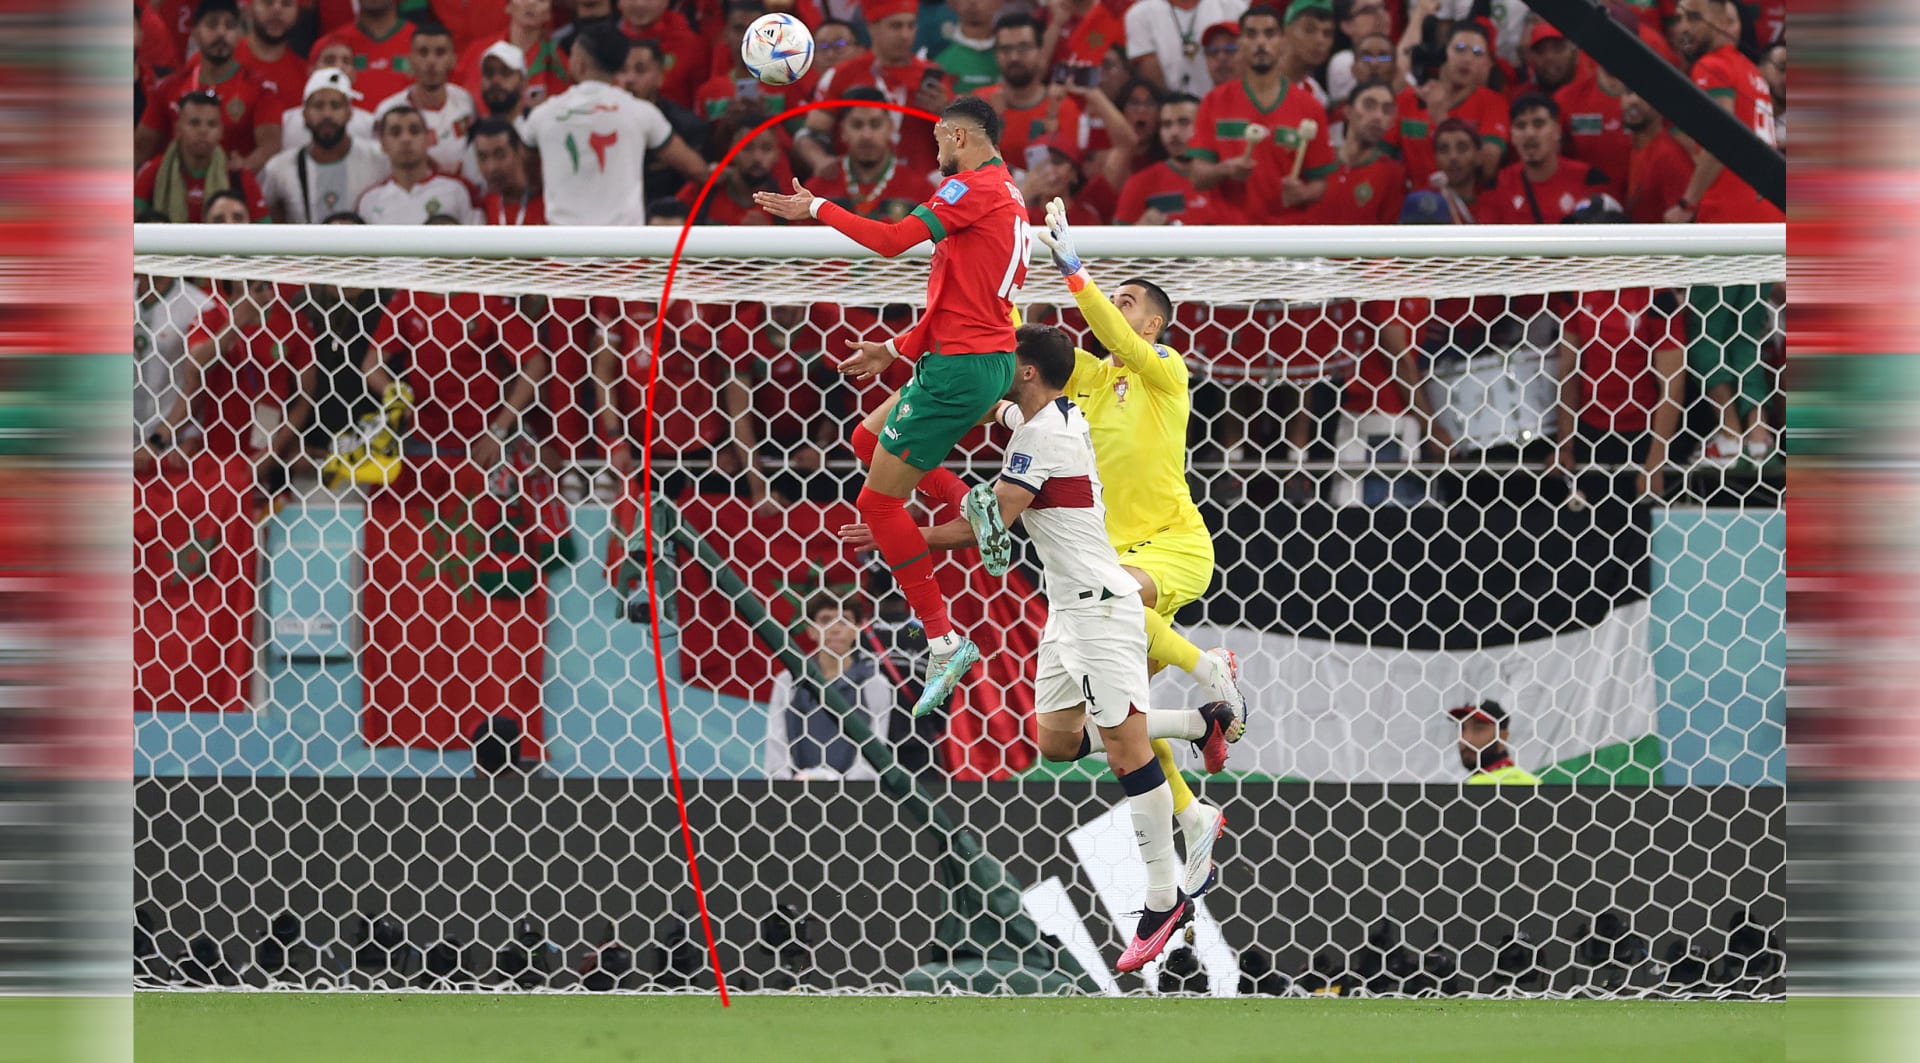 Comparar la longitud del salto del Nusairi marroquí con el salto de Ronaldo plantea una interacción 